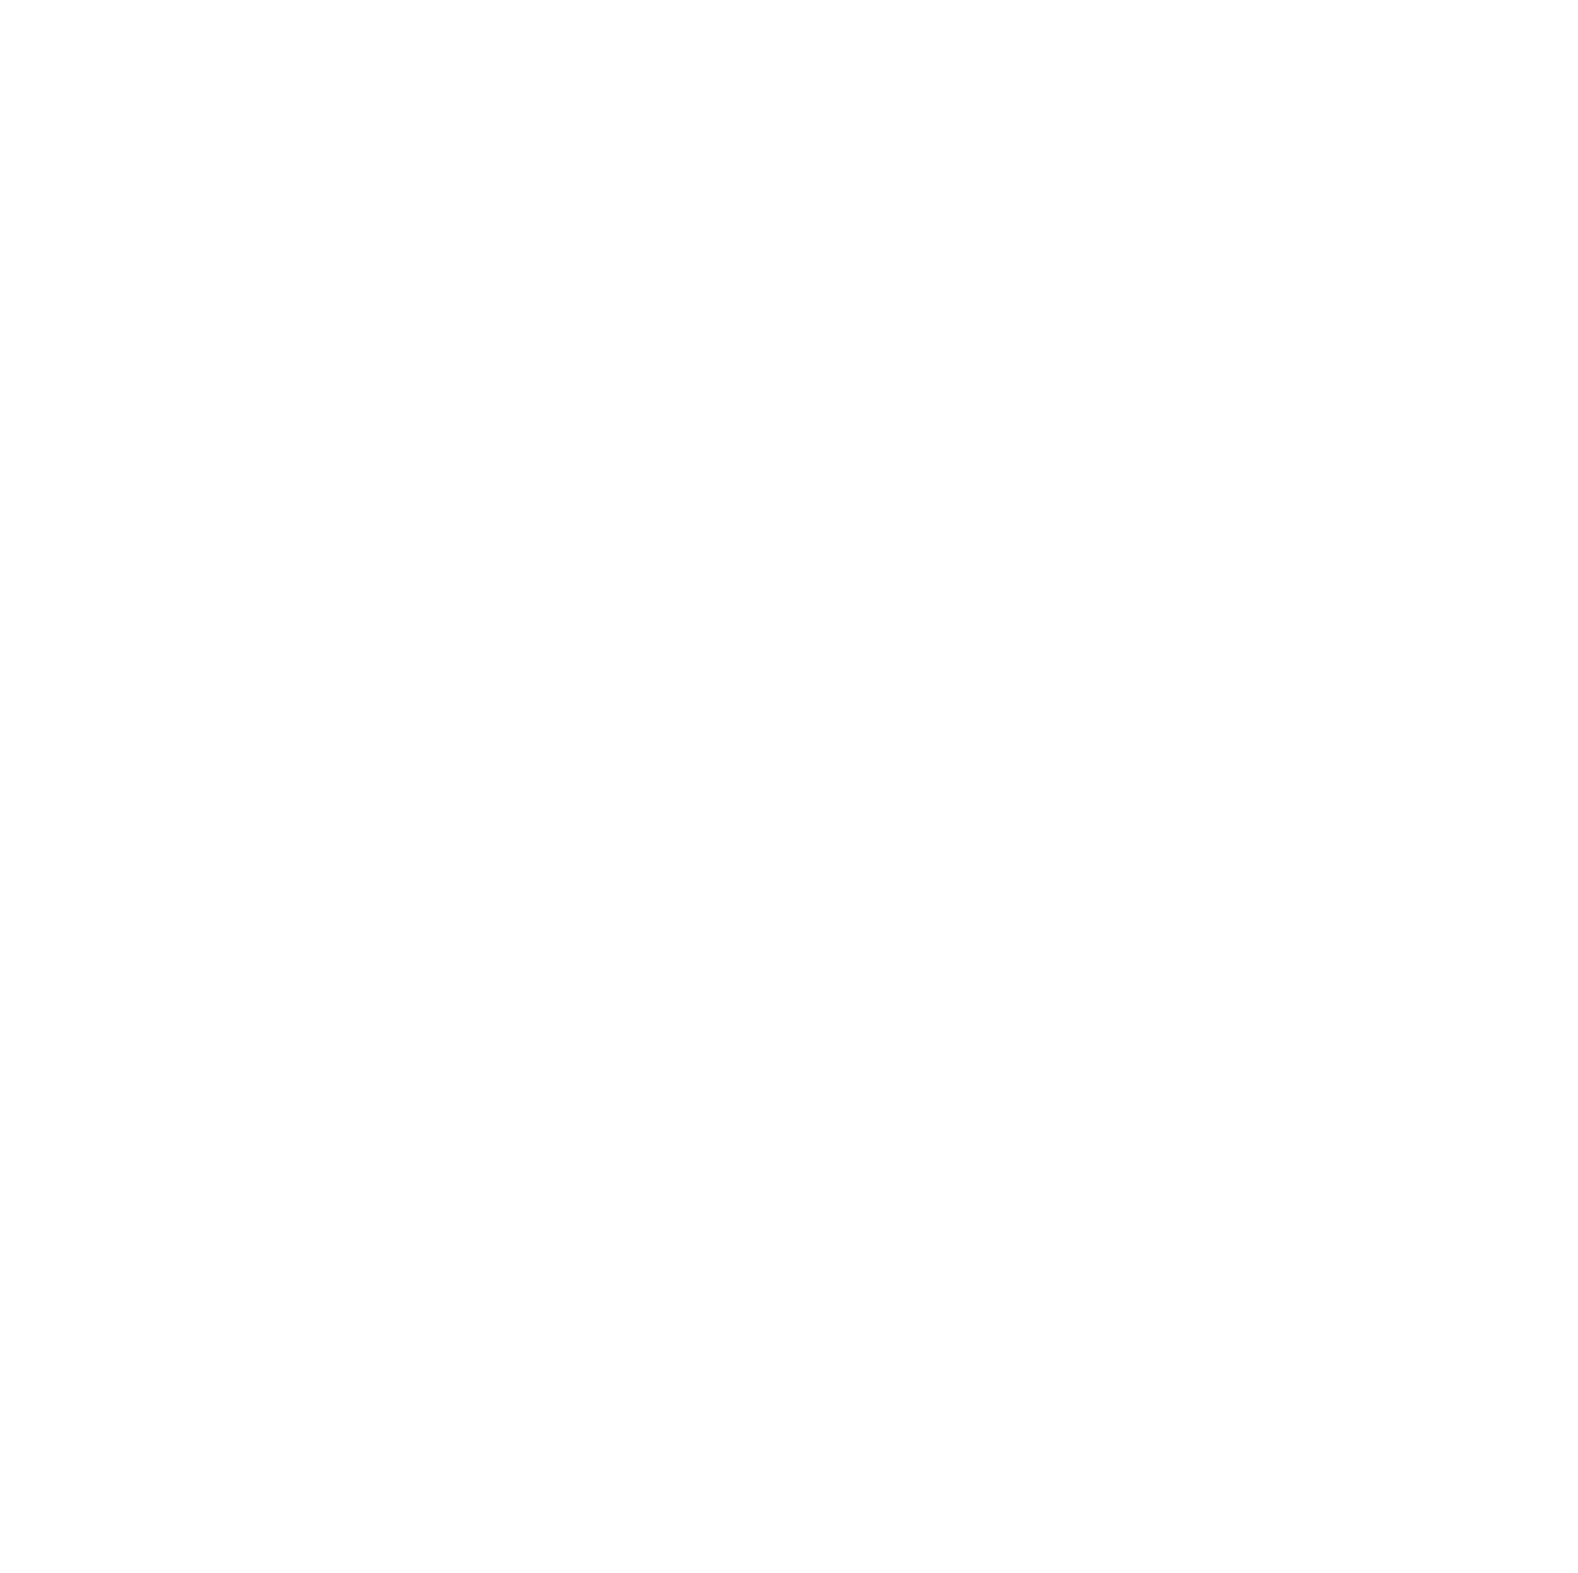 MillerKnoll logo pour fonds sombres (PNG transparent)